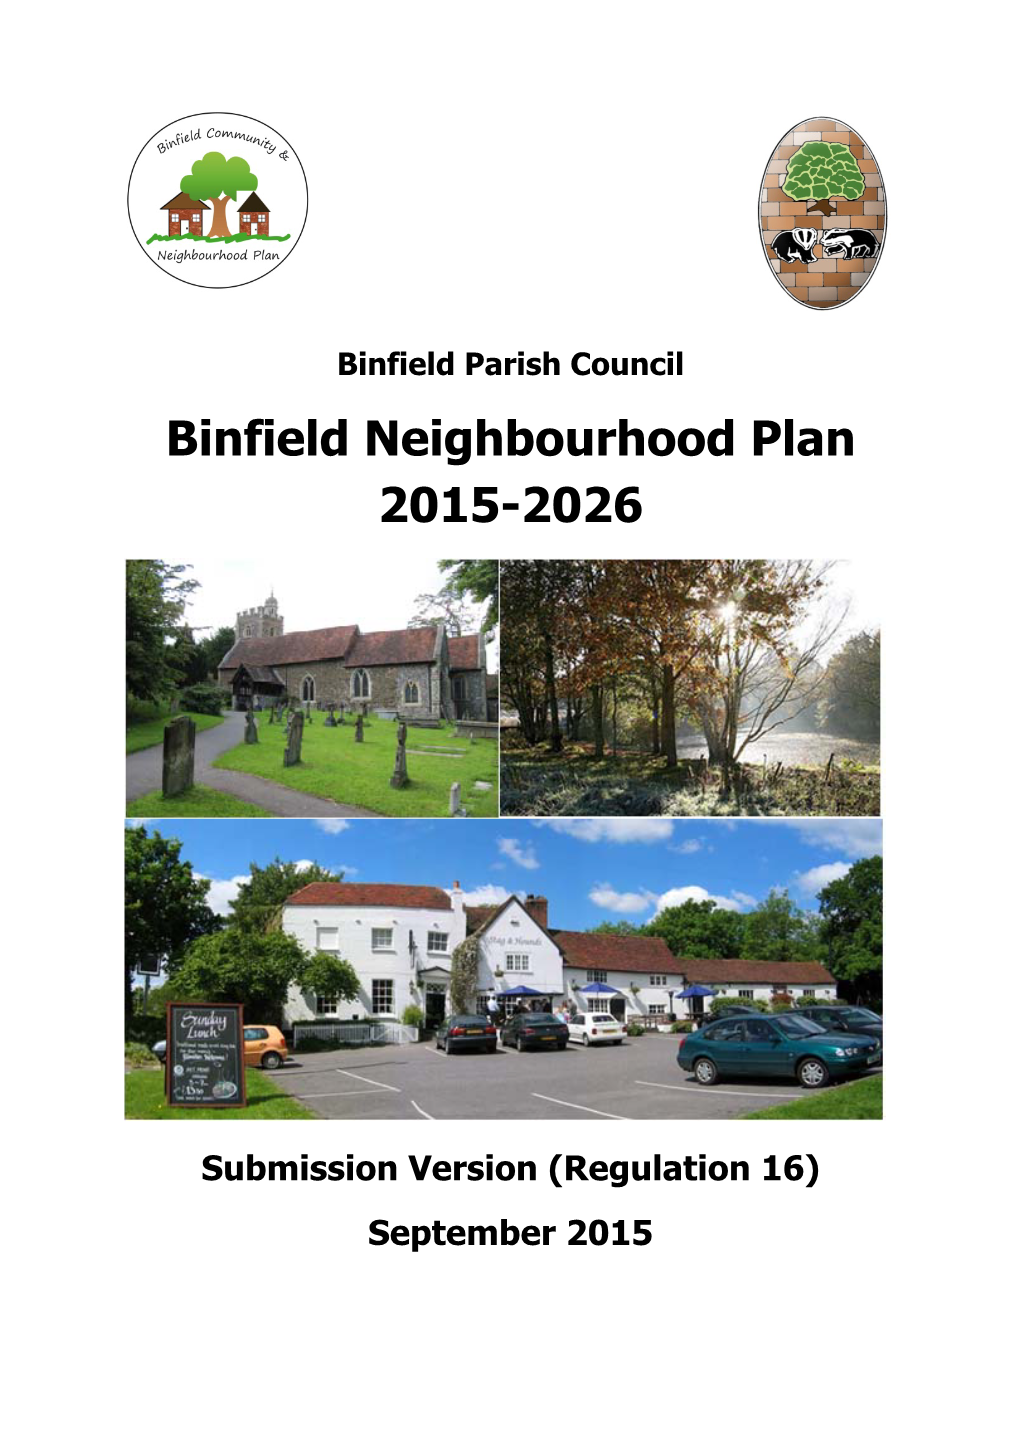 Binfield Neighbourhood Plan 2015-2026